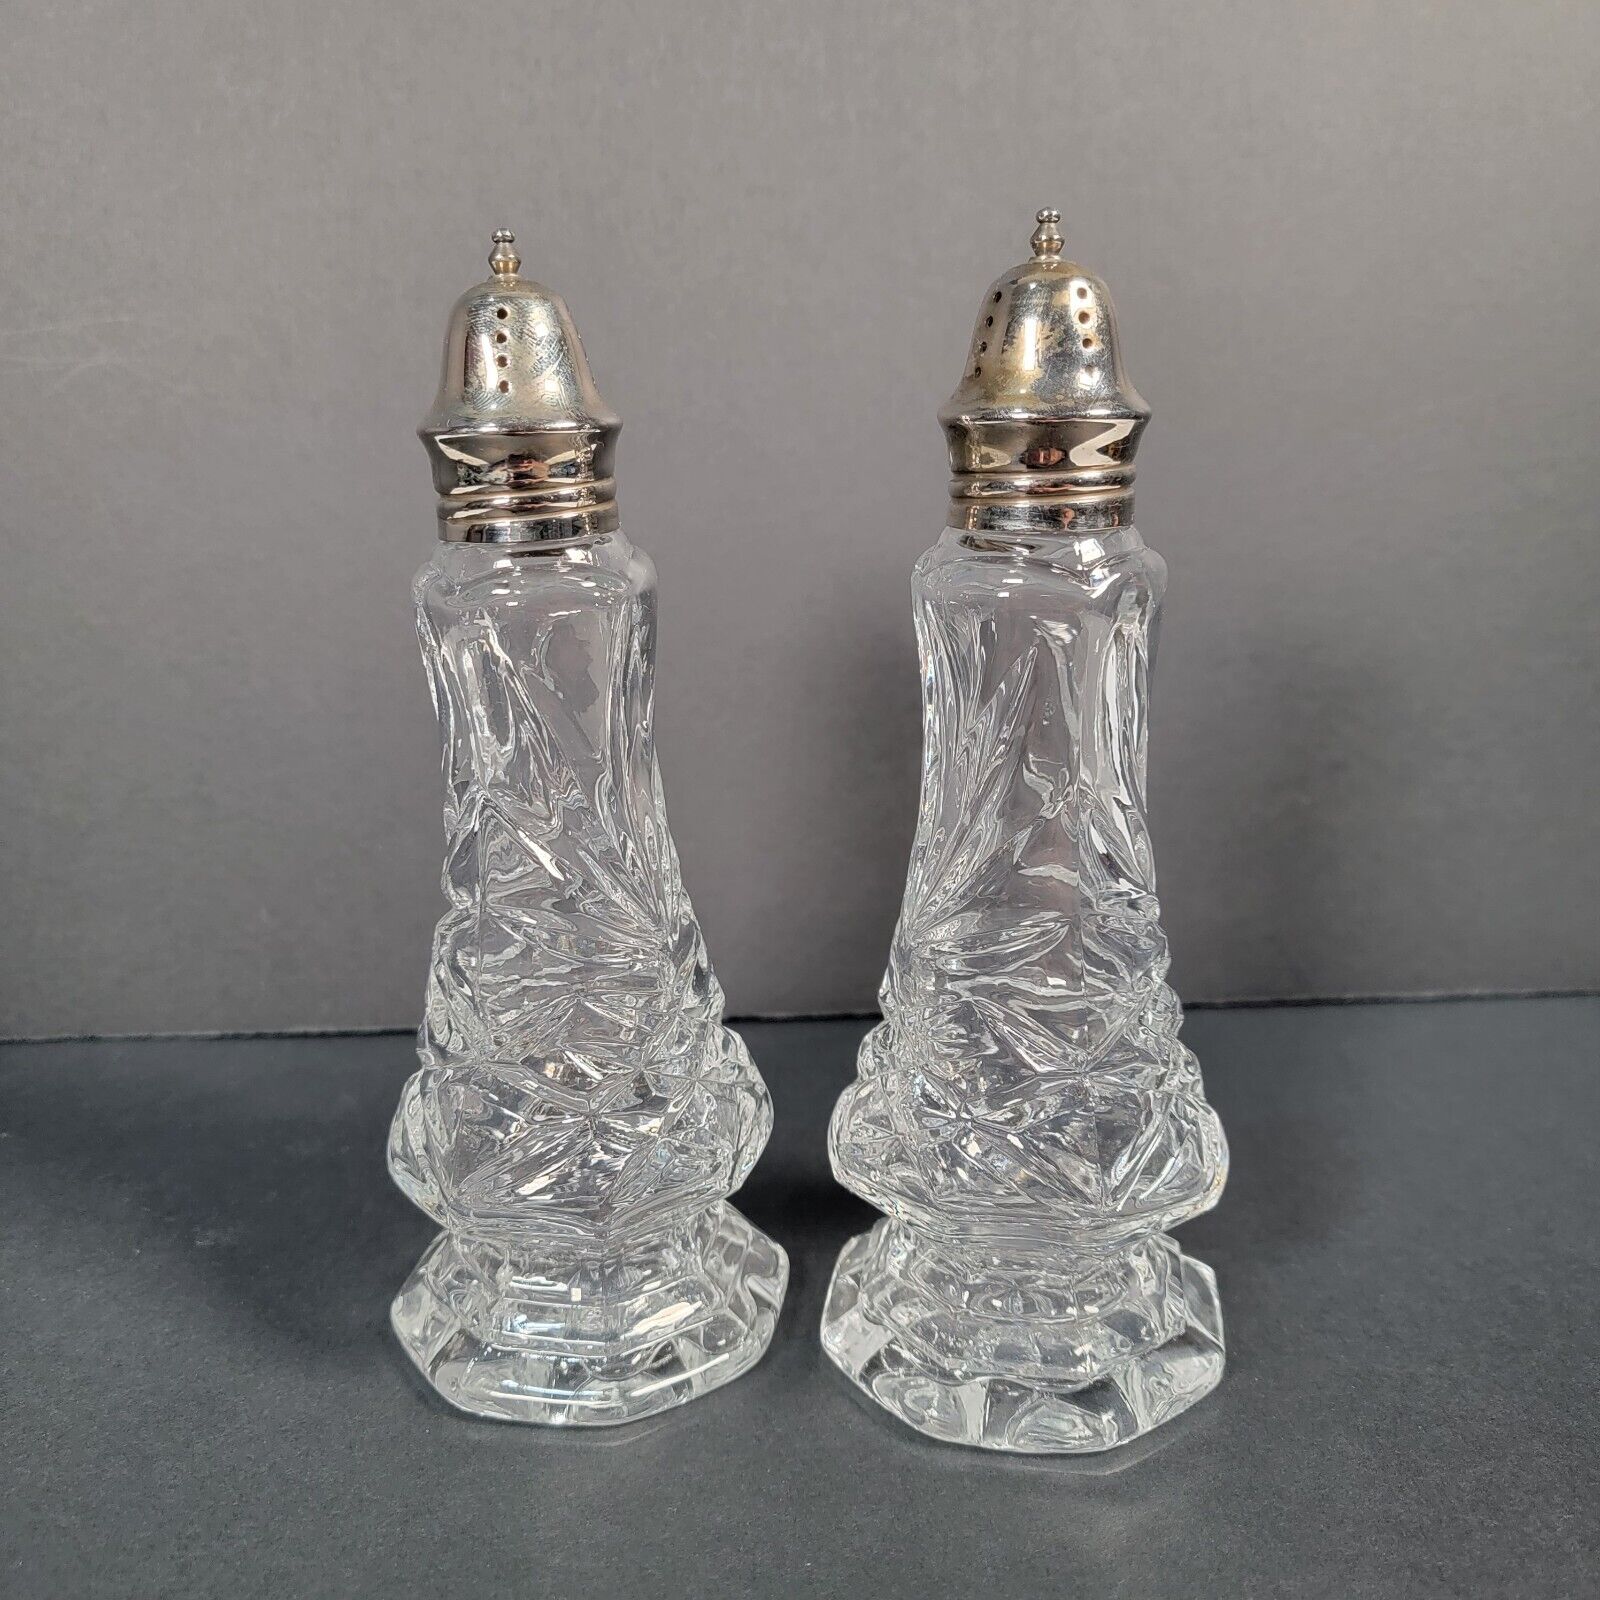 Godinger Silver Art Crystal Legends Salt & Pepper Shakers Elegant Cut Crystal